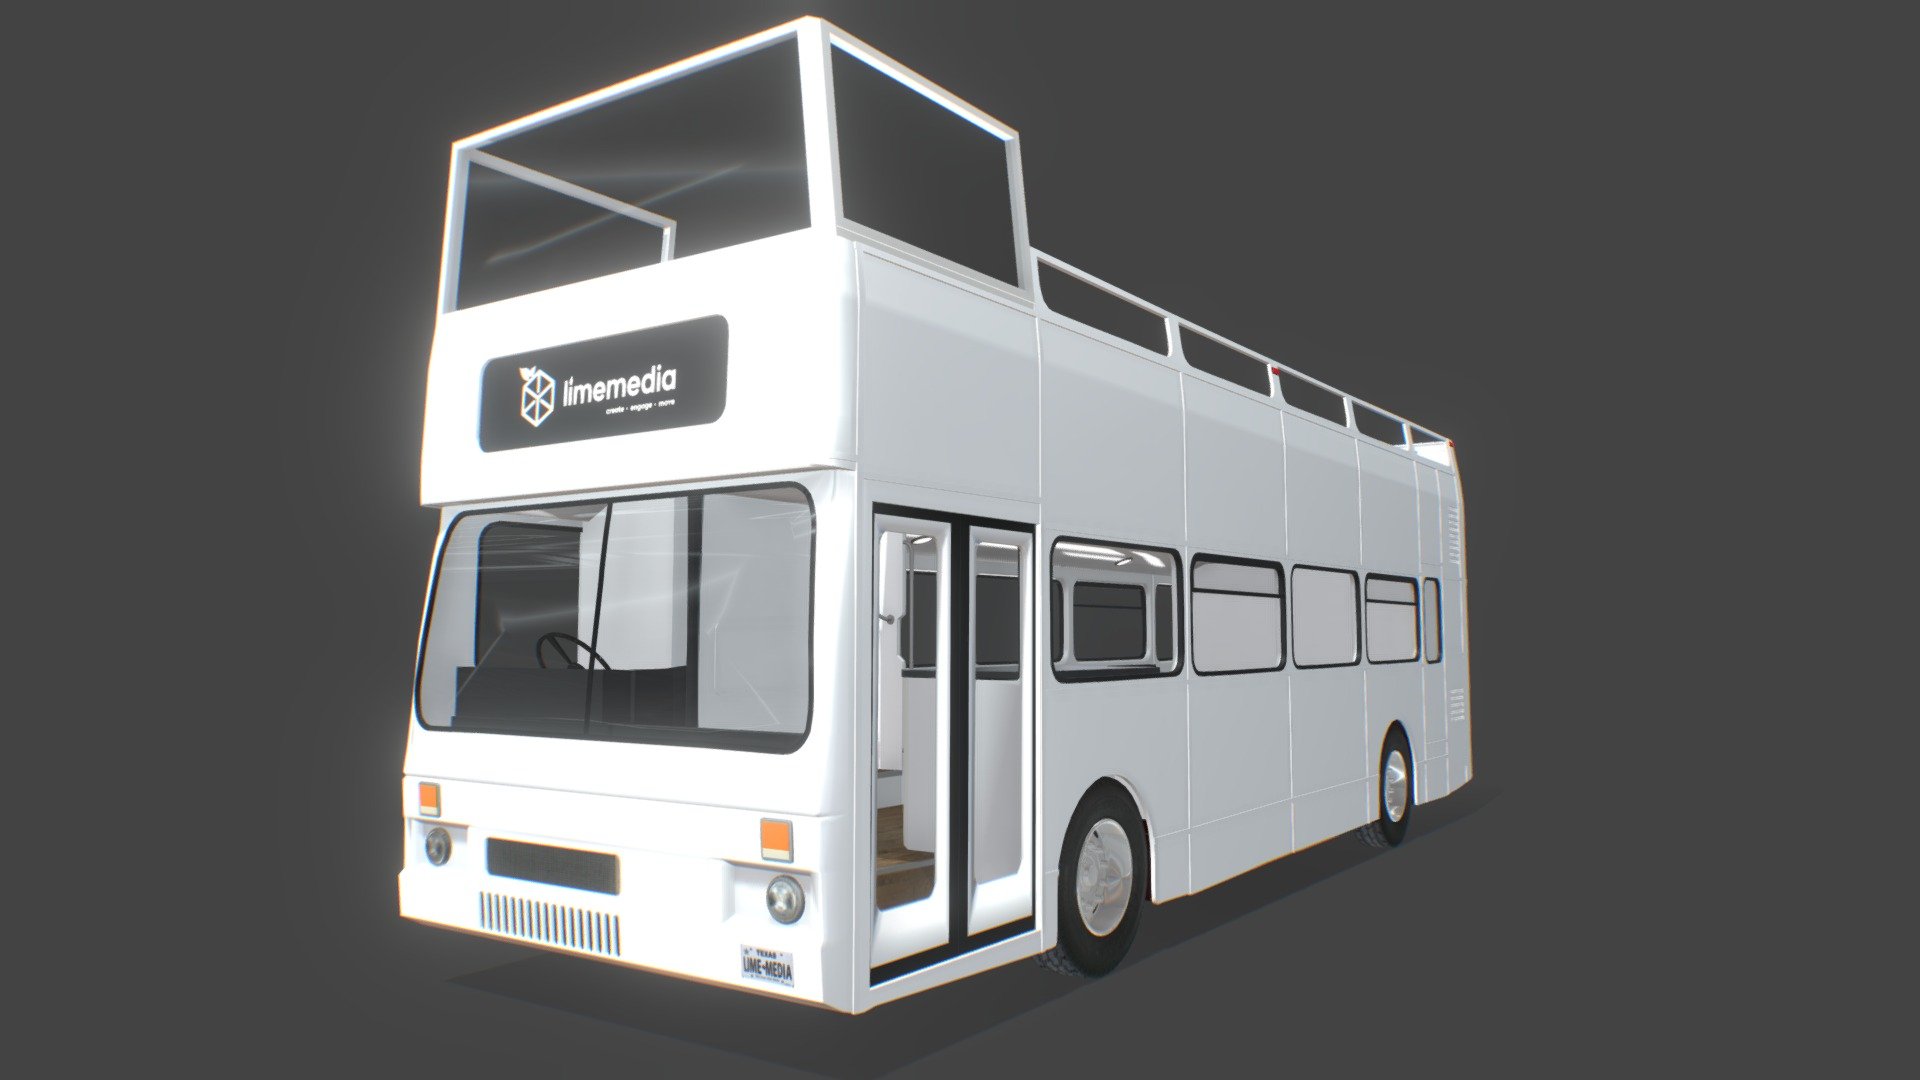 Double Decker Tour Buses - Encompass Media Group